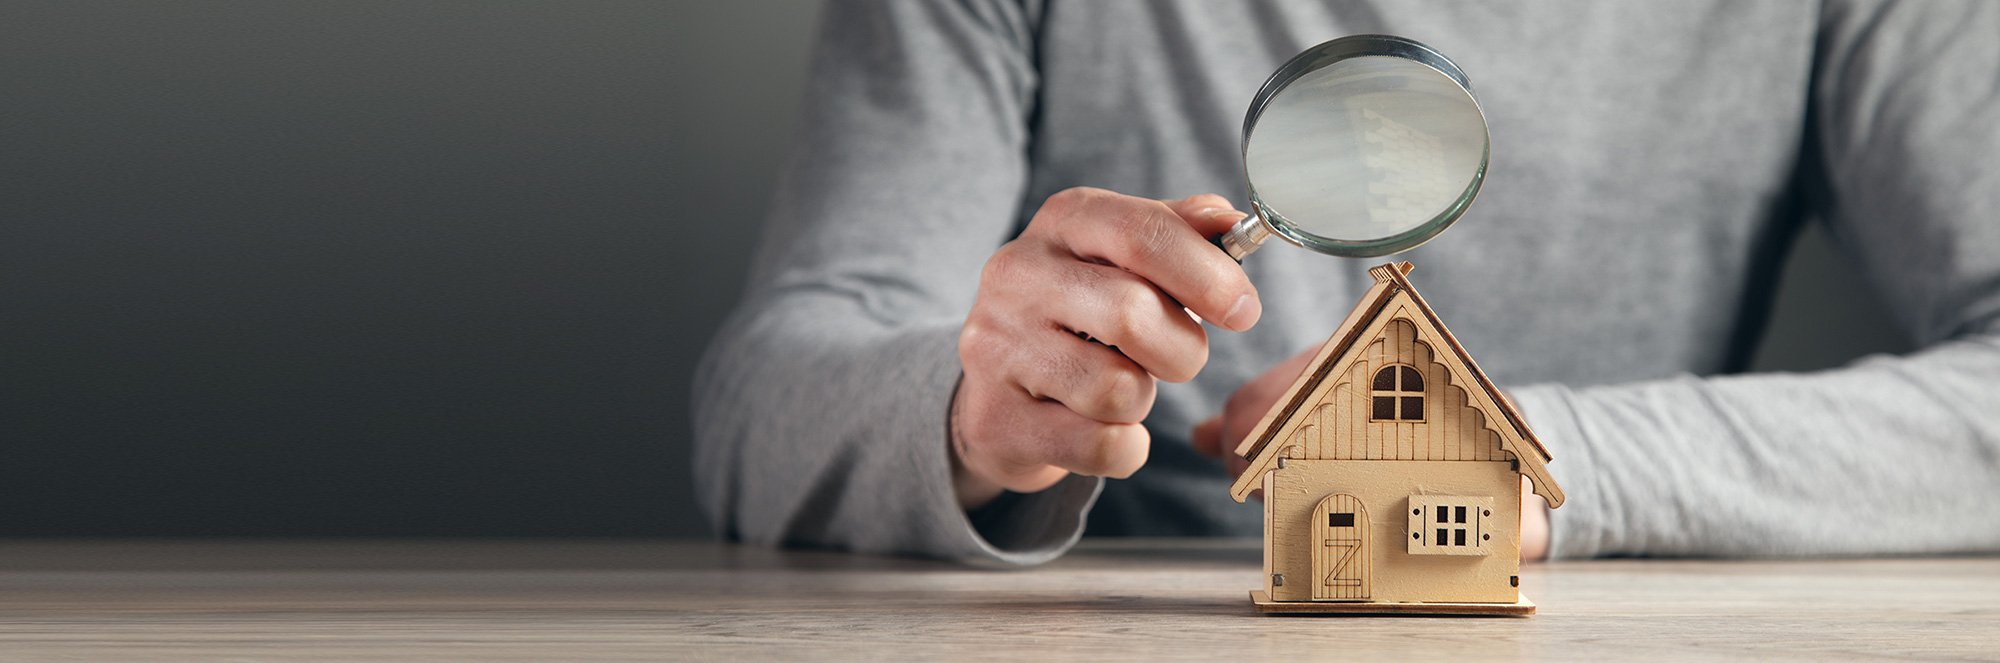 Lista de verificación para el comprador de la primera casa: Qué tener en cuenta al comprar una casa